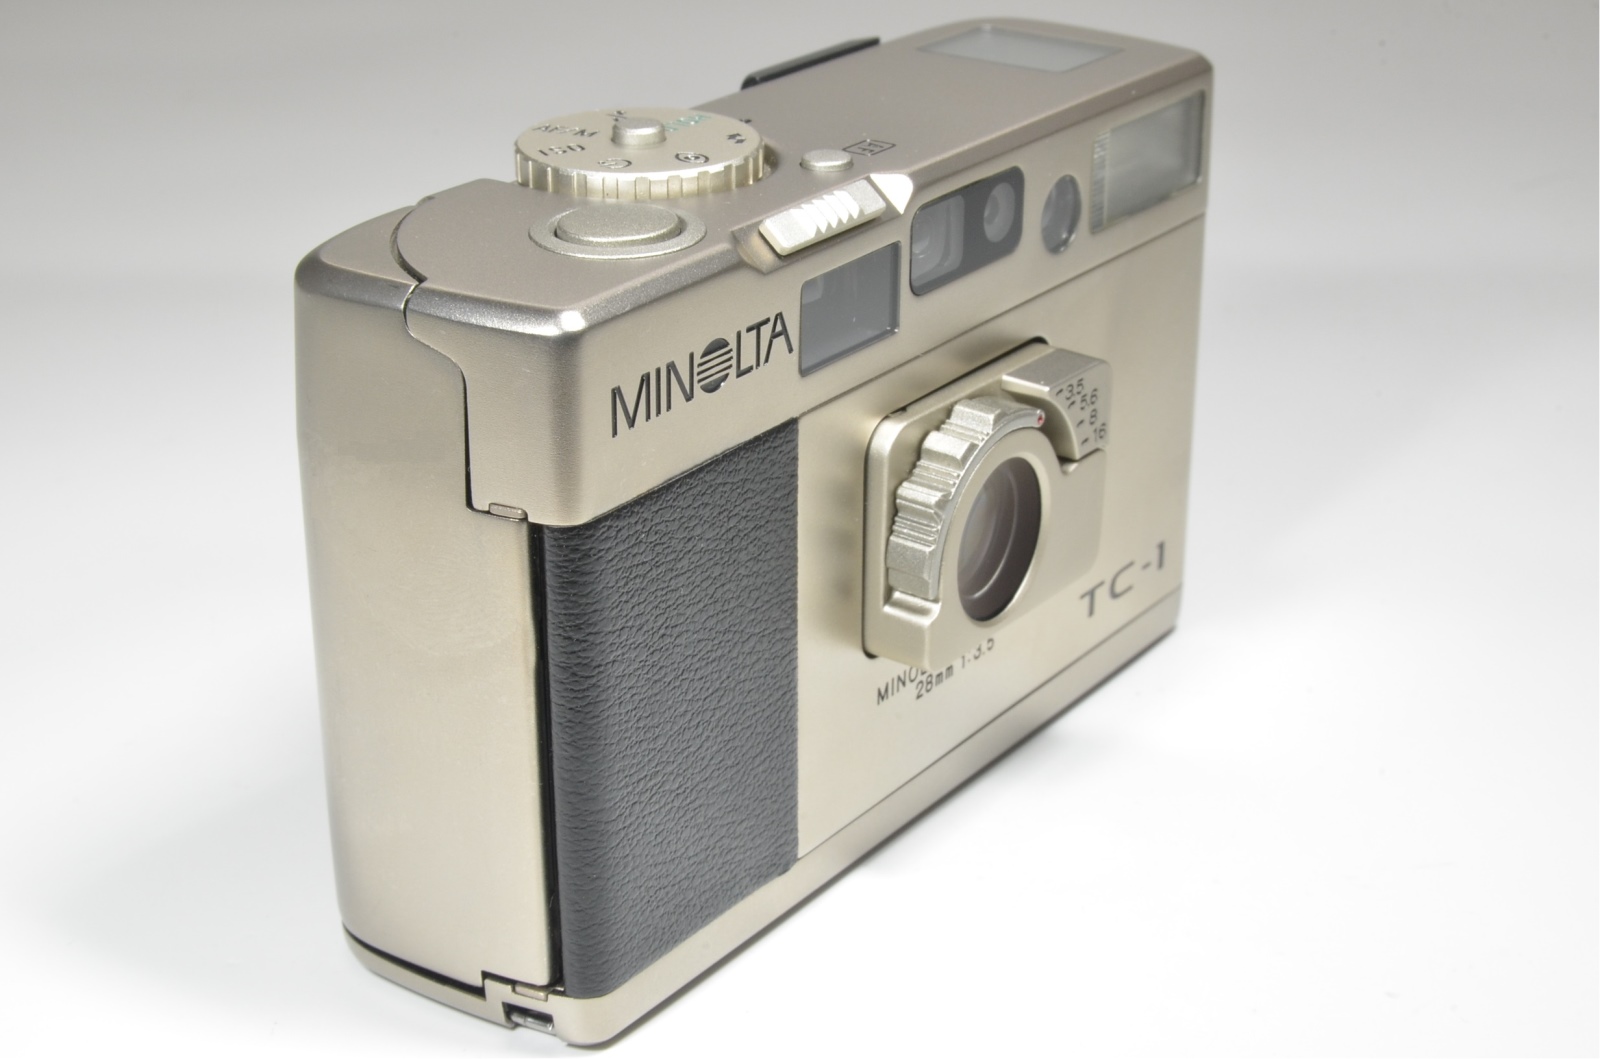 minolta tc-1 film camera in boxed